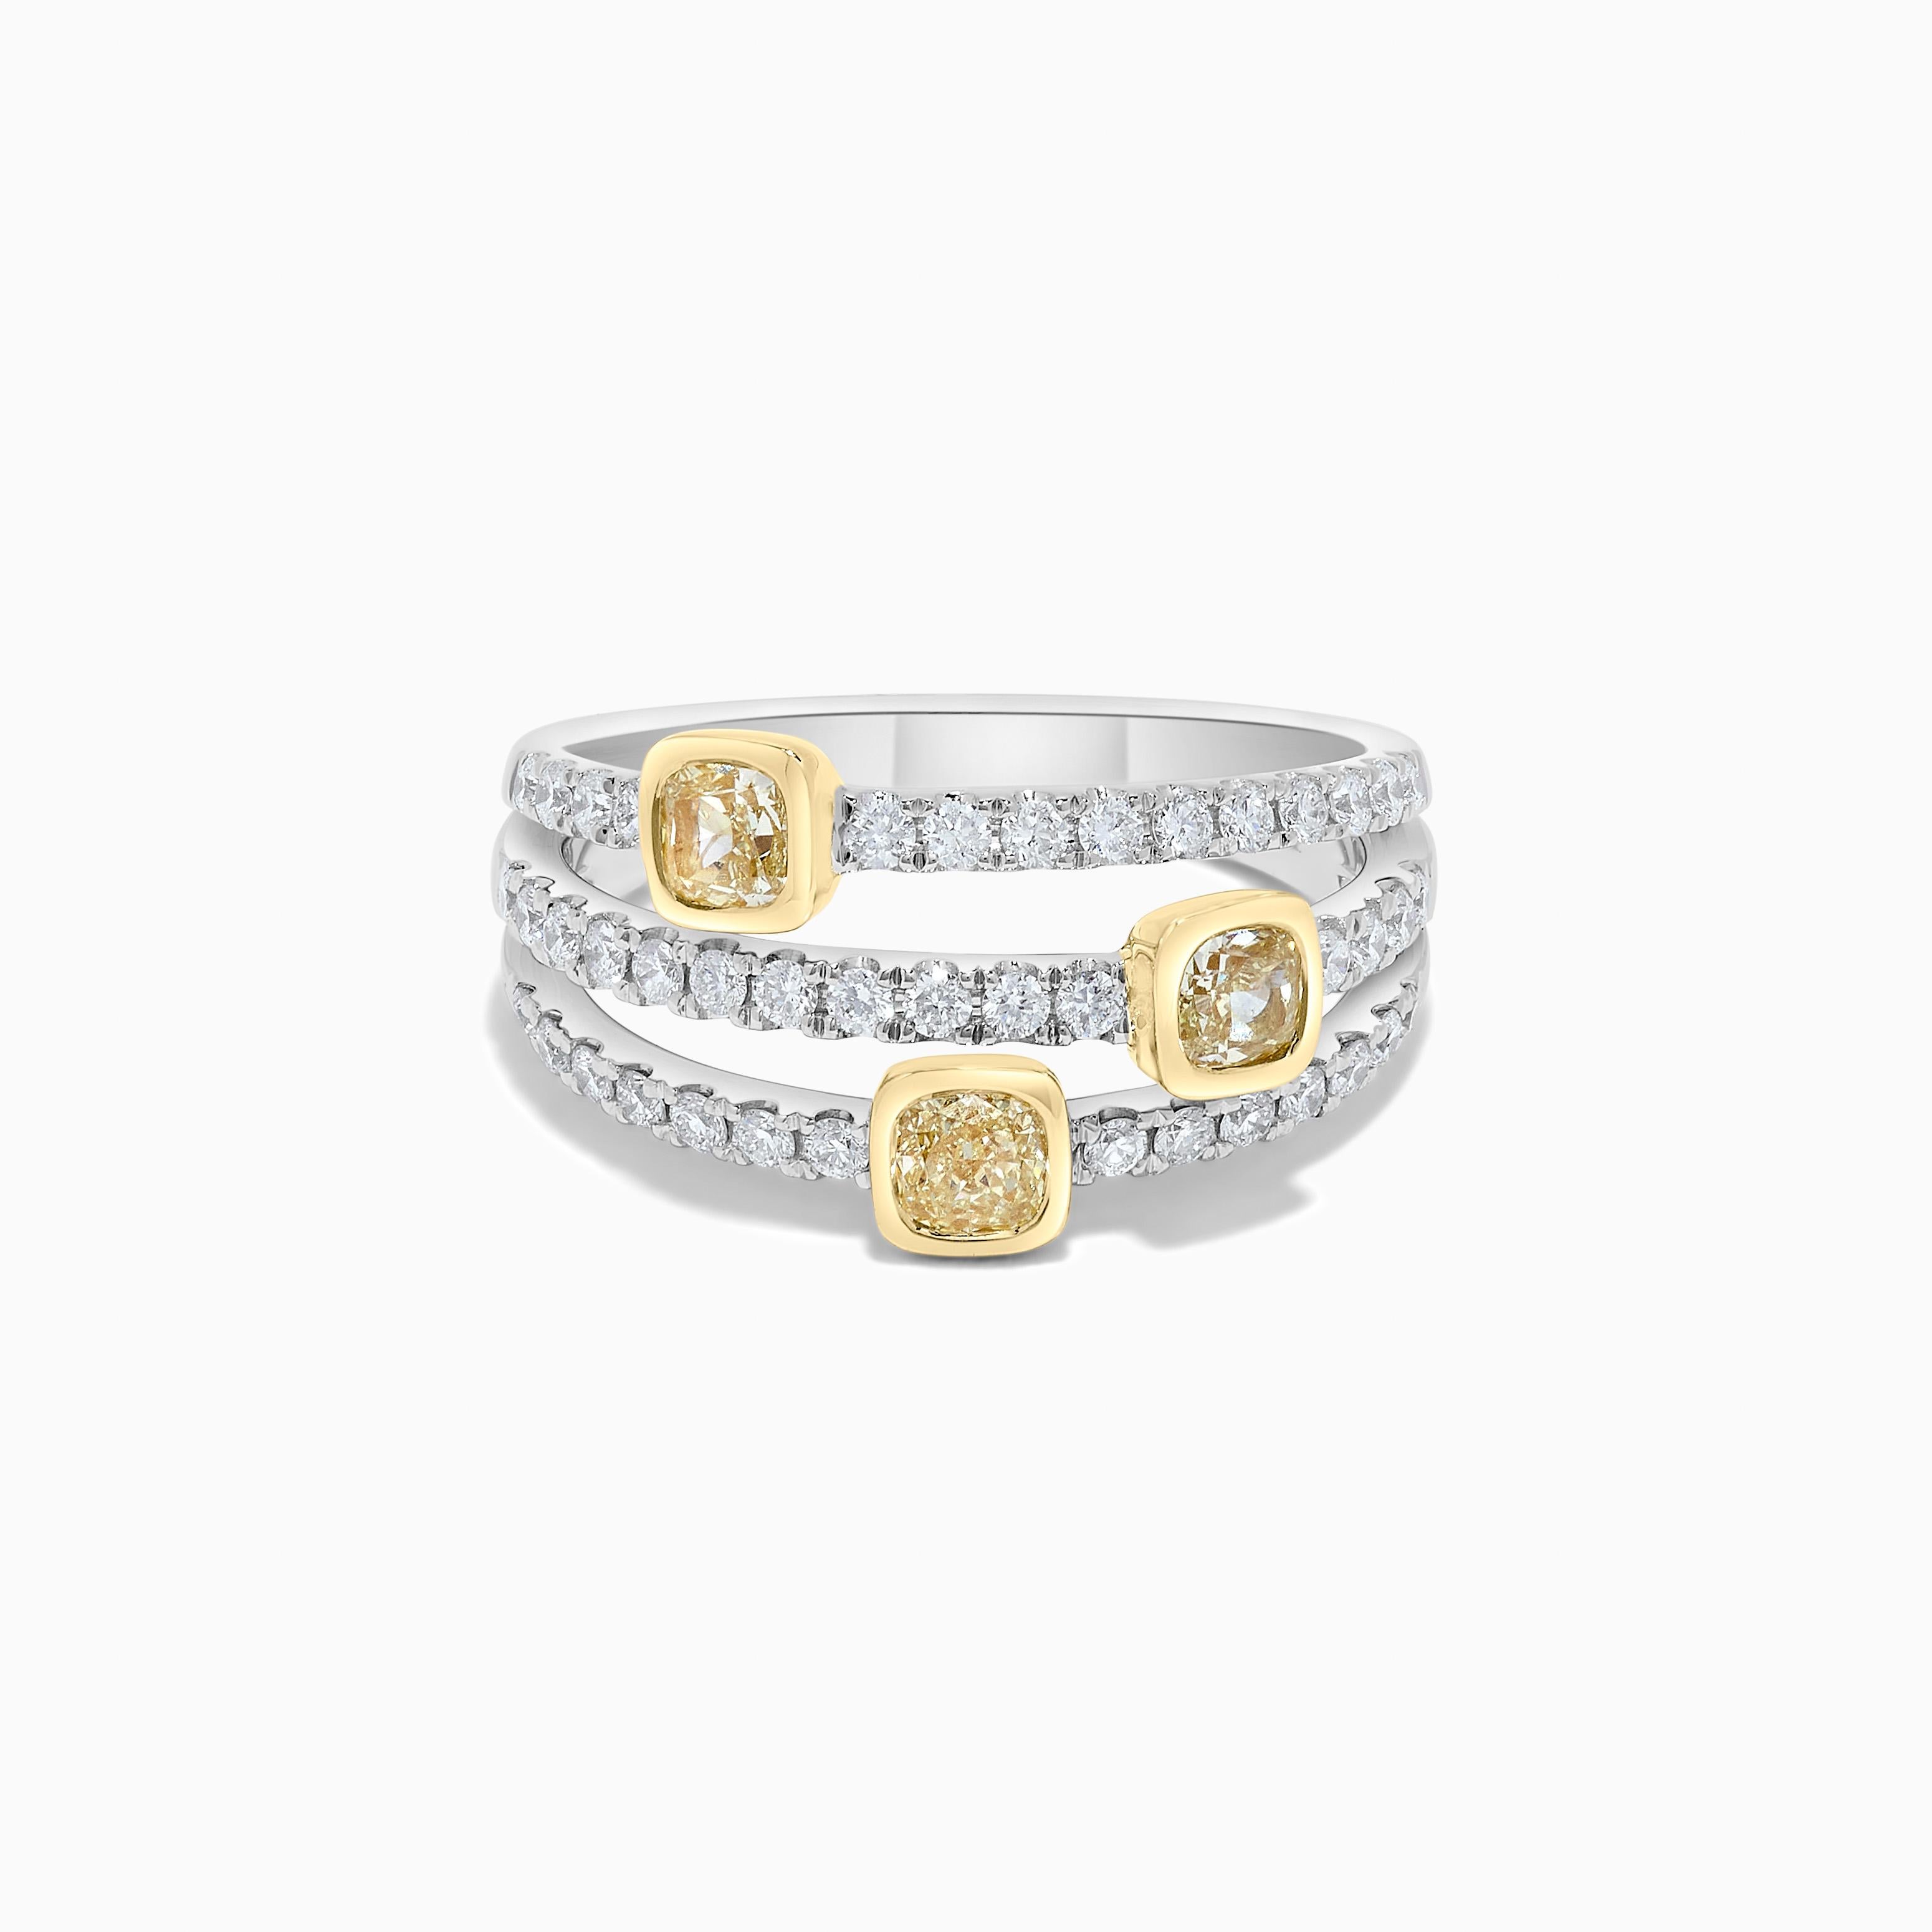 Das klassische Diamantband von RareGemWorld. Eingefasst in eine wunderschöne Fassung aus 18 Karat Gelb- und Weißgold mit natürlichen gelben Diamanten im Kissenschliff, ergänzt durch natürliche weiße Diamanten im Rundschliff. Dieses Band wird Sie